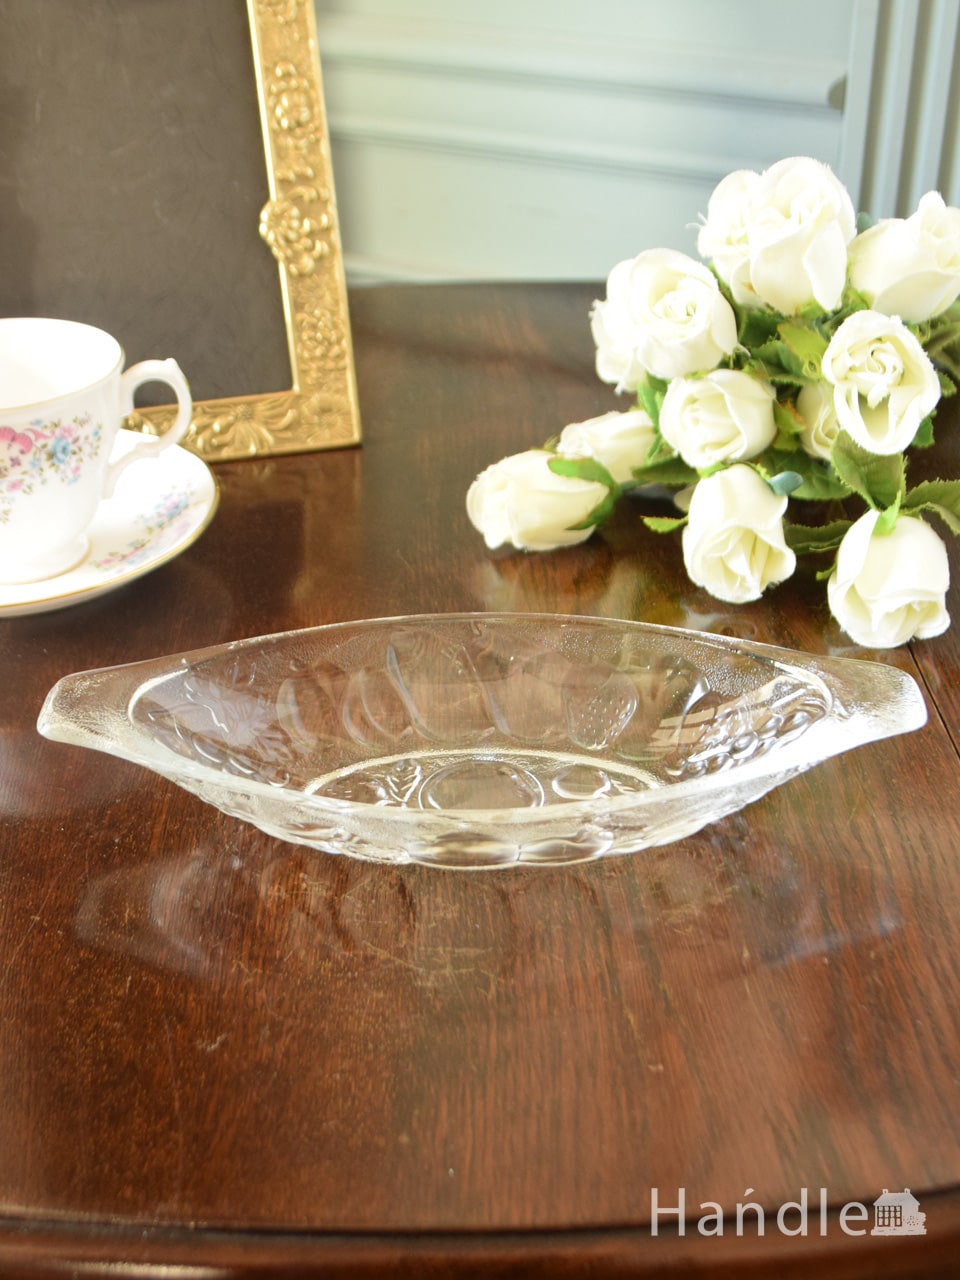 アンティークのガラス食器、フルーツがデザインされた可愛らしいガラストレイ